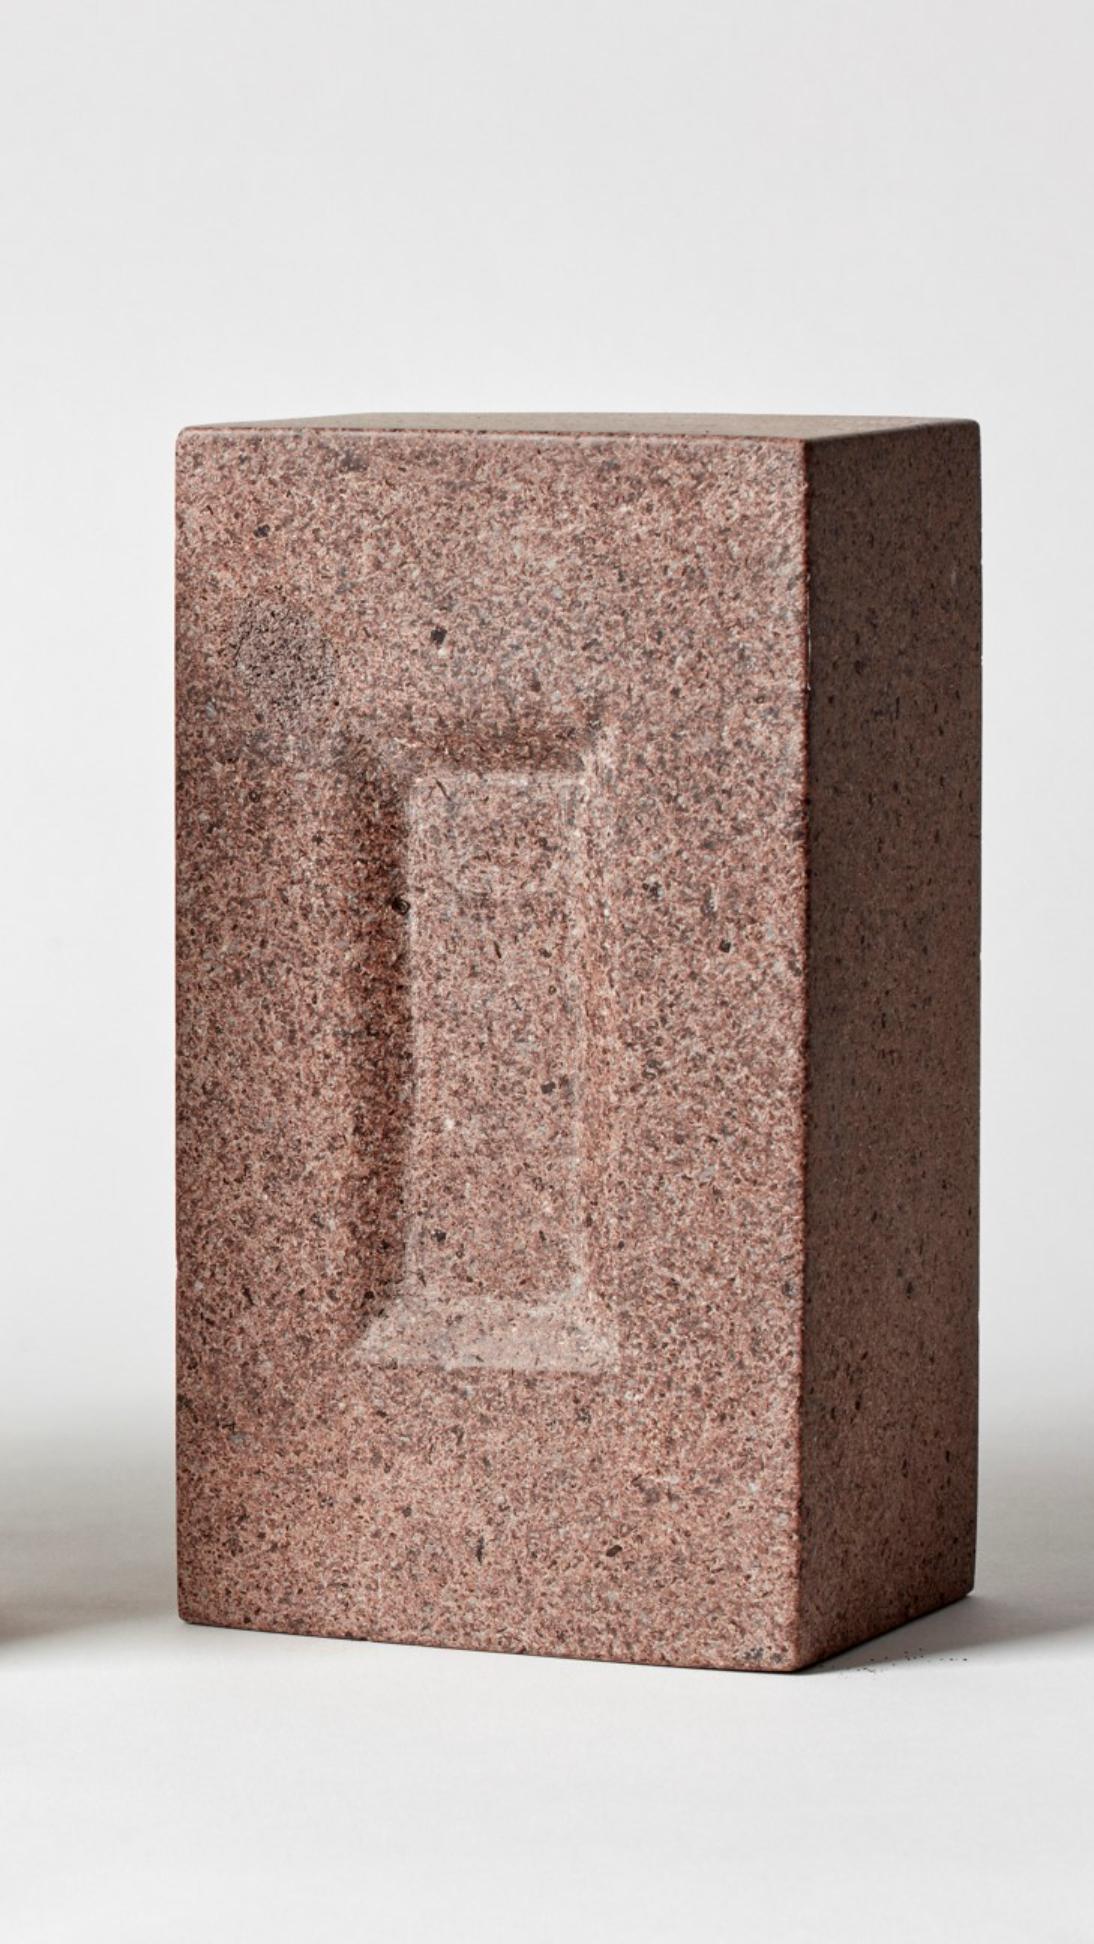 BRICK von Estudio Rafael Freyre
Abmessungen: B 12,5 T 9 x H 23 cm 
MATERIALIEN: Anden-Steine
Auch verfügbar: Andere Oberflächen verfügbar,

Der Ziegelstein ist ein allgemeines konstruktives Element, das Teil des städtischen Imaginären ist. In Peru